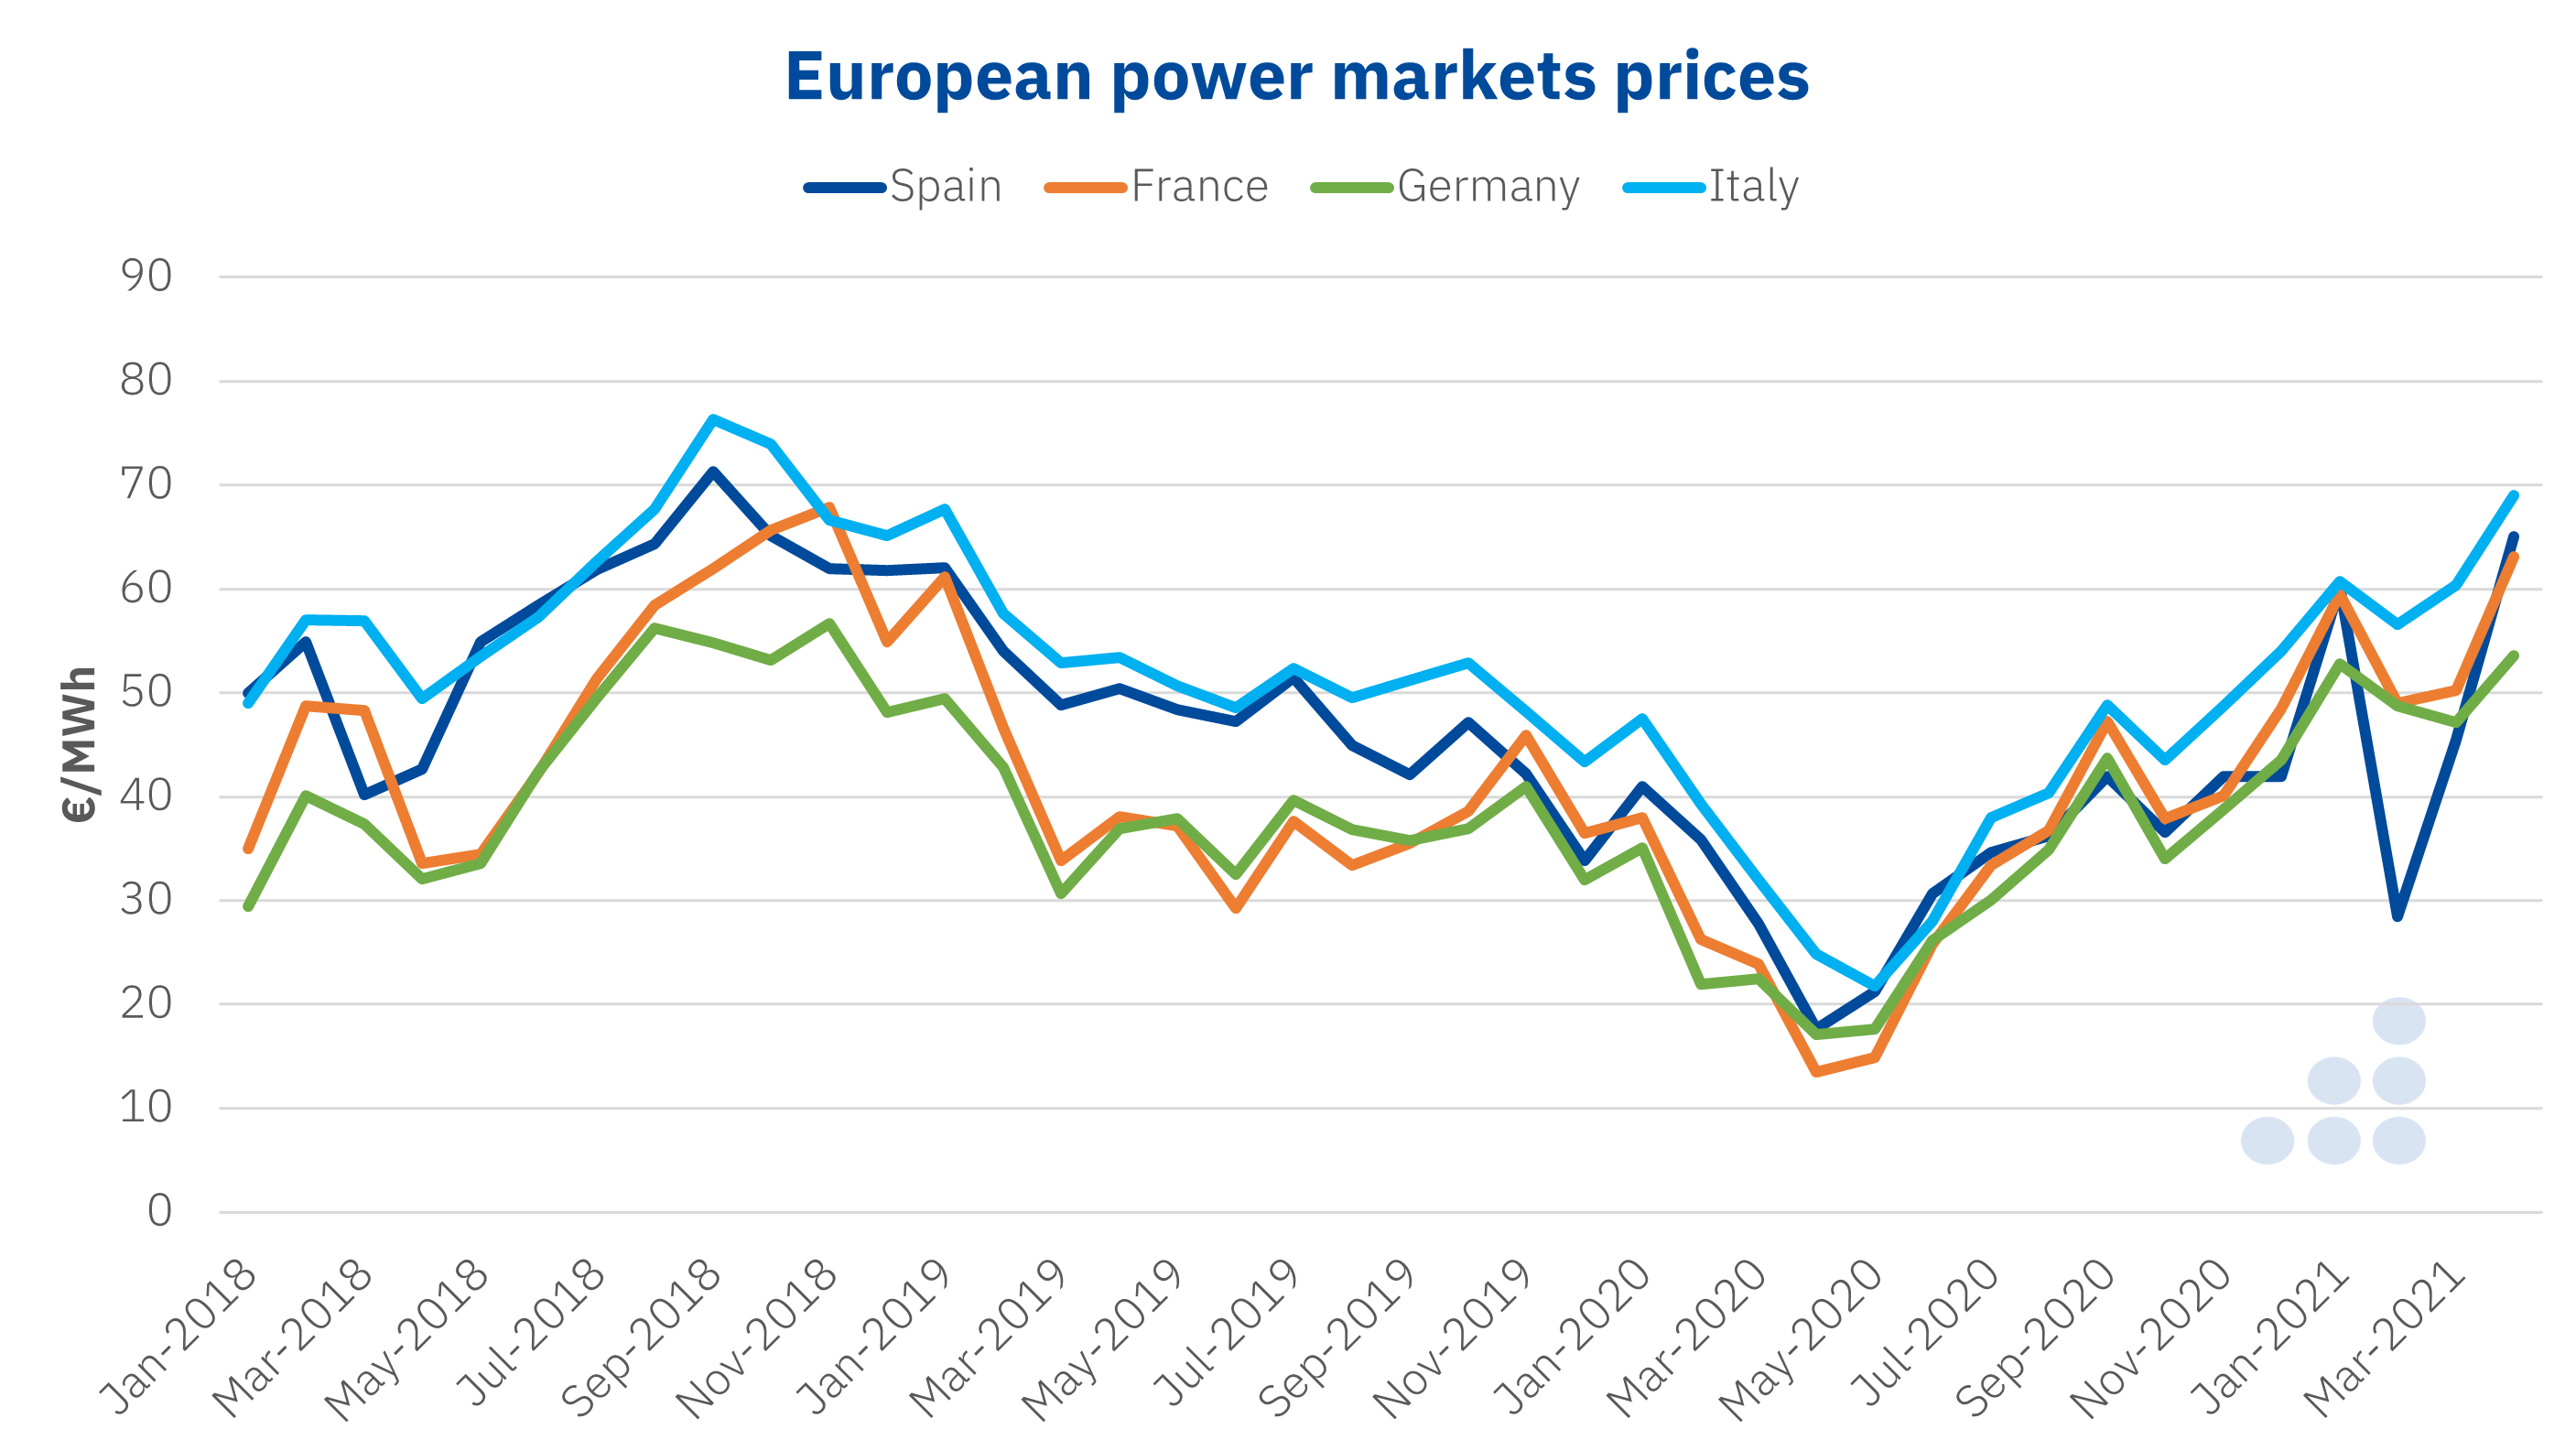 AleaSoft - Power markets prices Europe